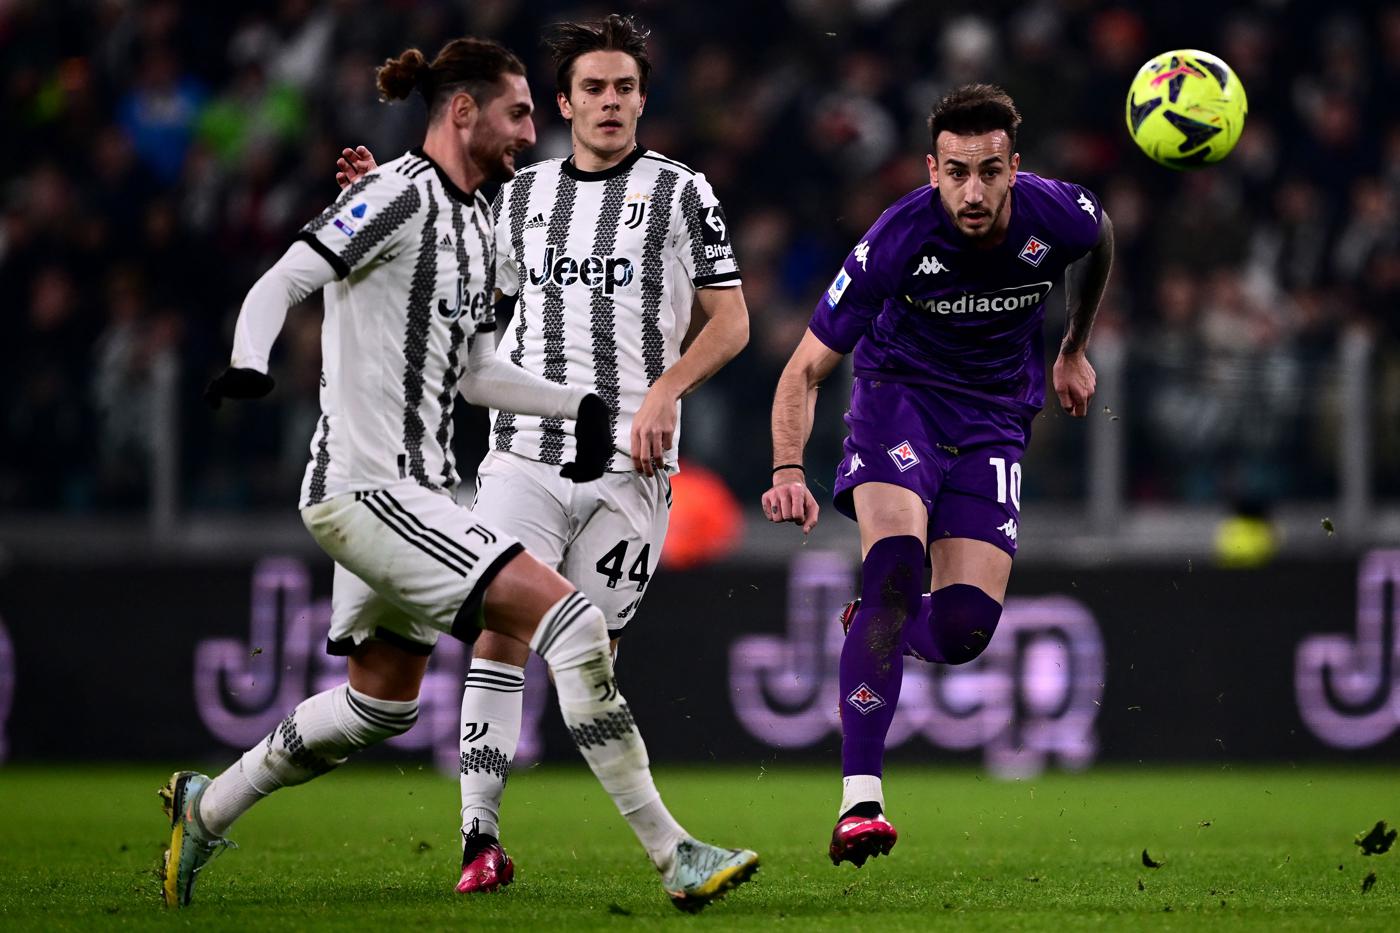 Juventus - Fiorentina - 1:0. Italian Championship, round 22